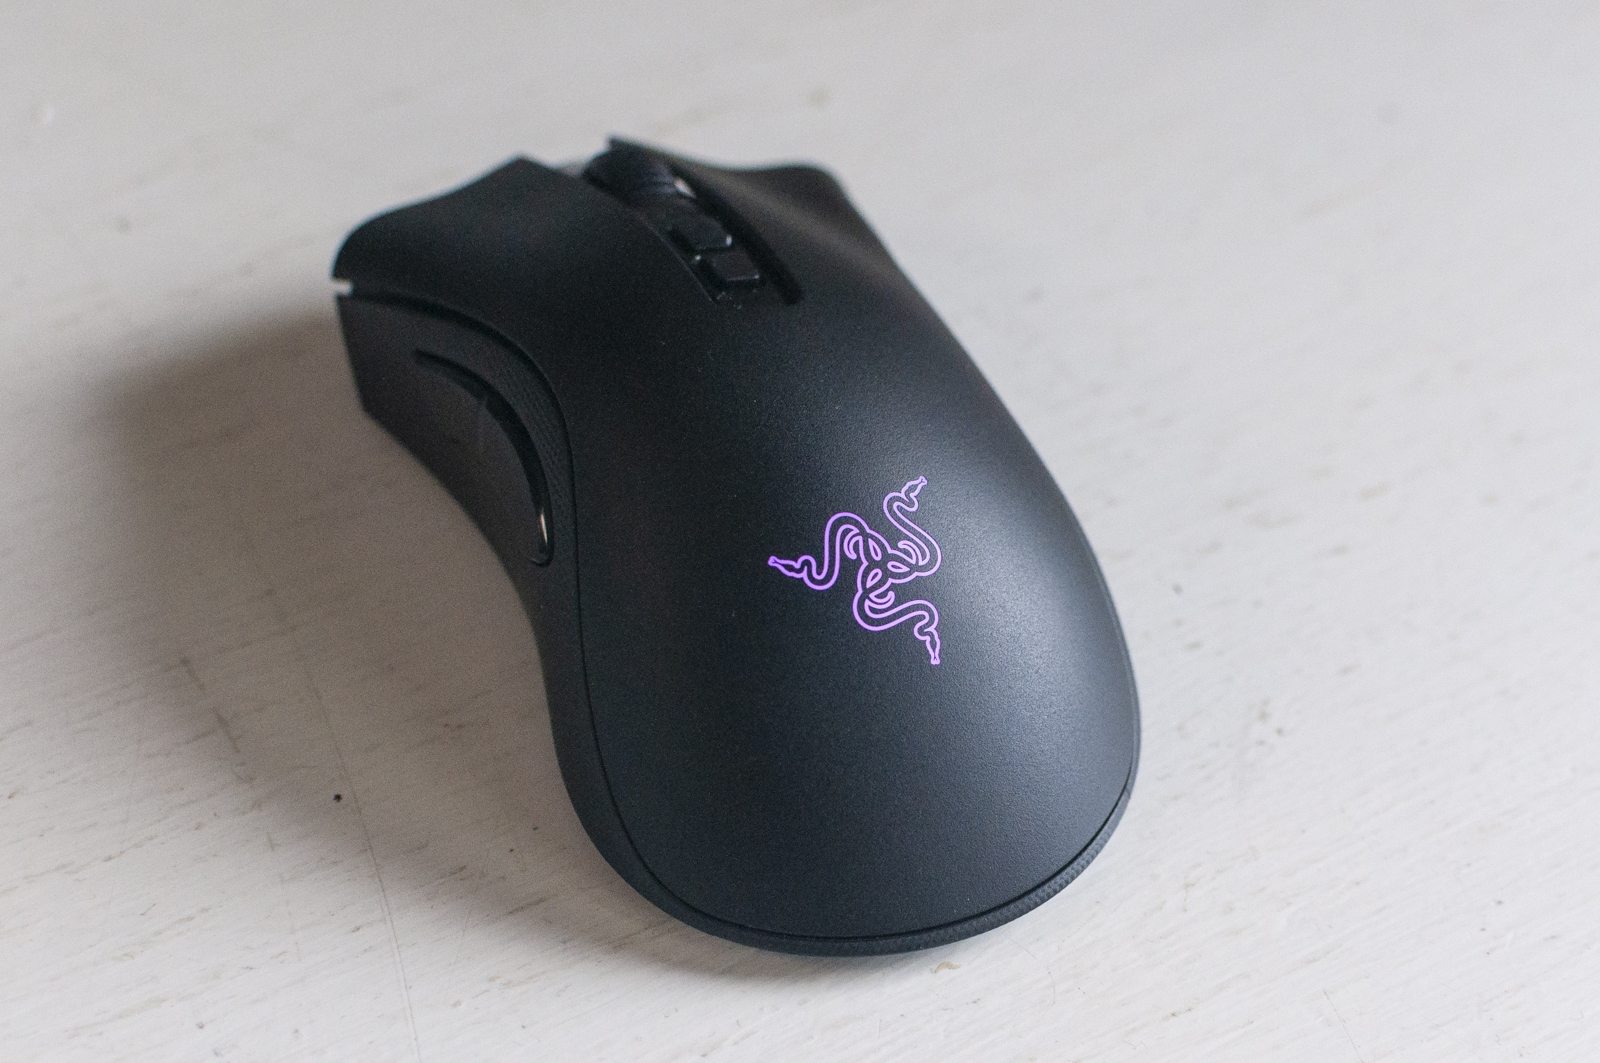 Recensione Razer DeathAdder V2 Pro, il mouse pro per eccellenza adesso è wireless